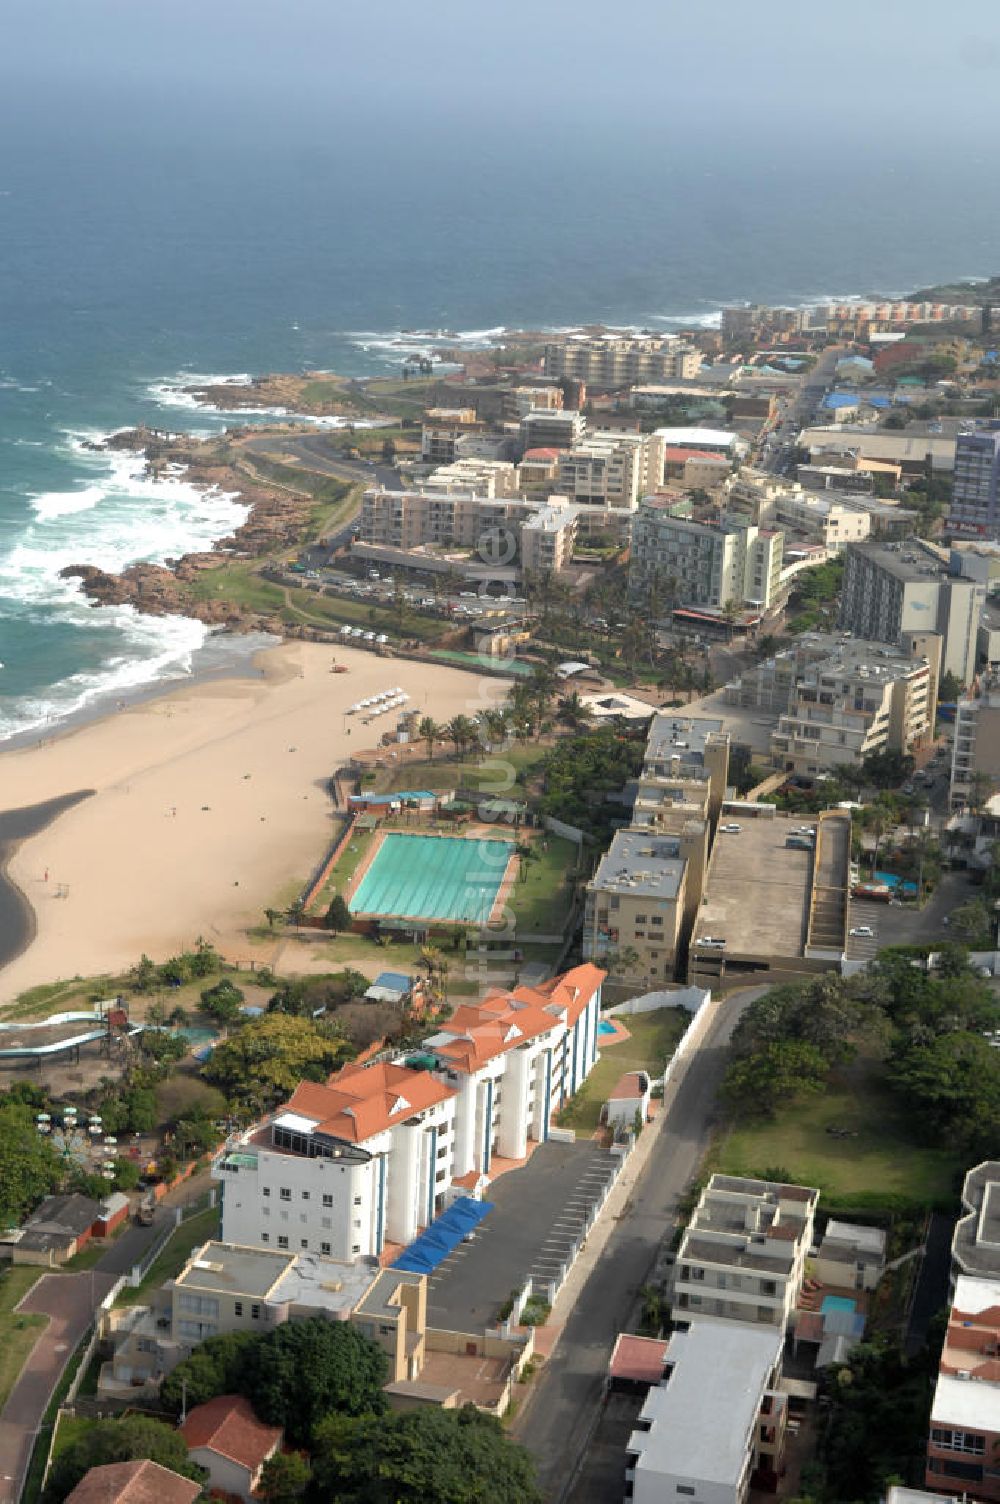 MARGATE von oben - Stadtbild von Margate in Südafrika